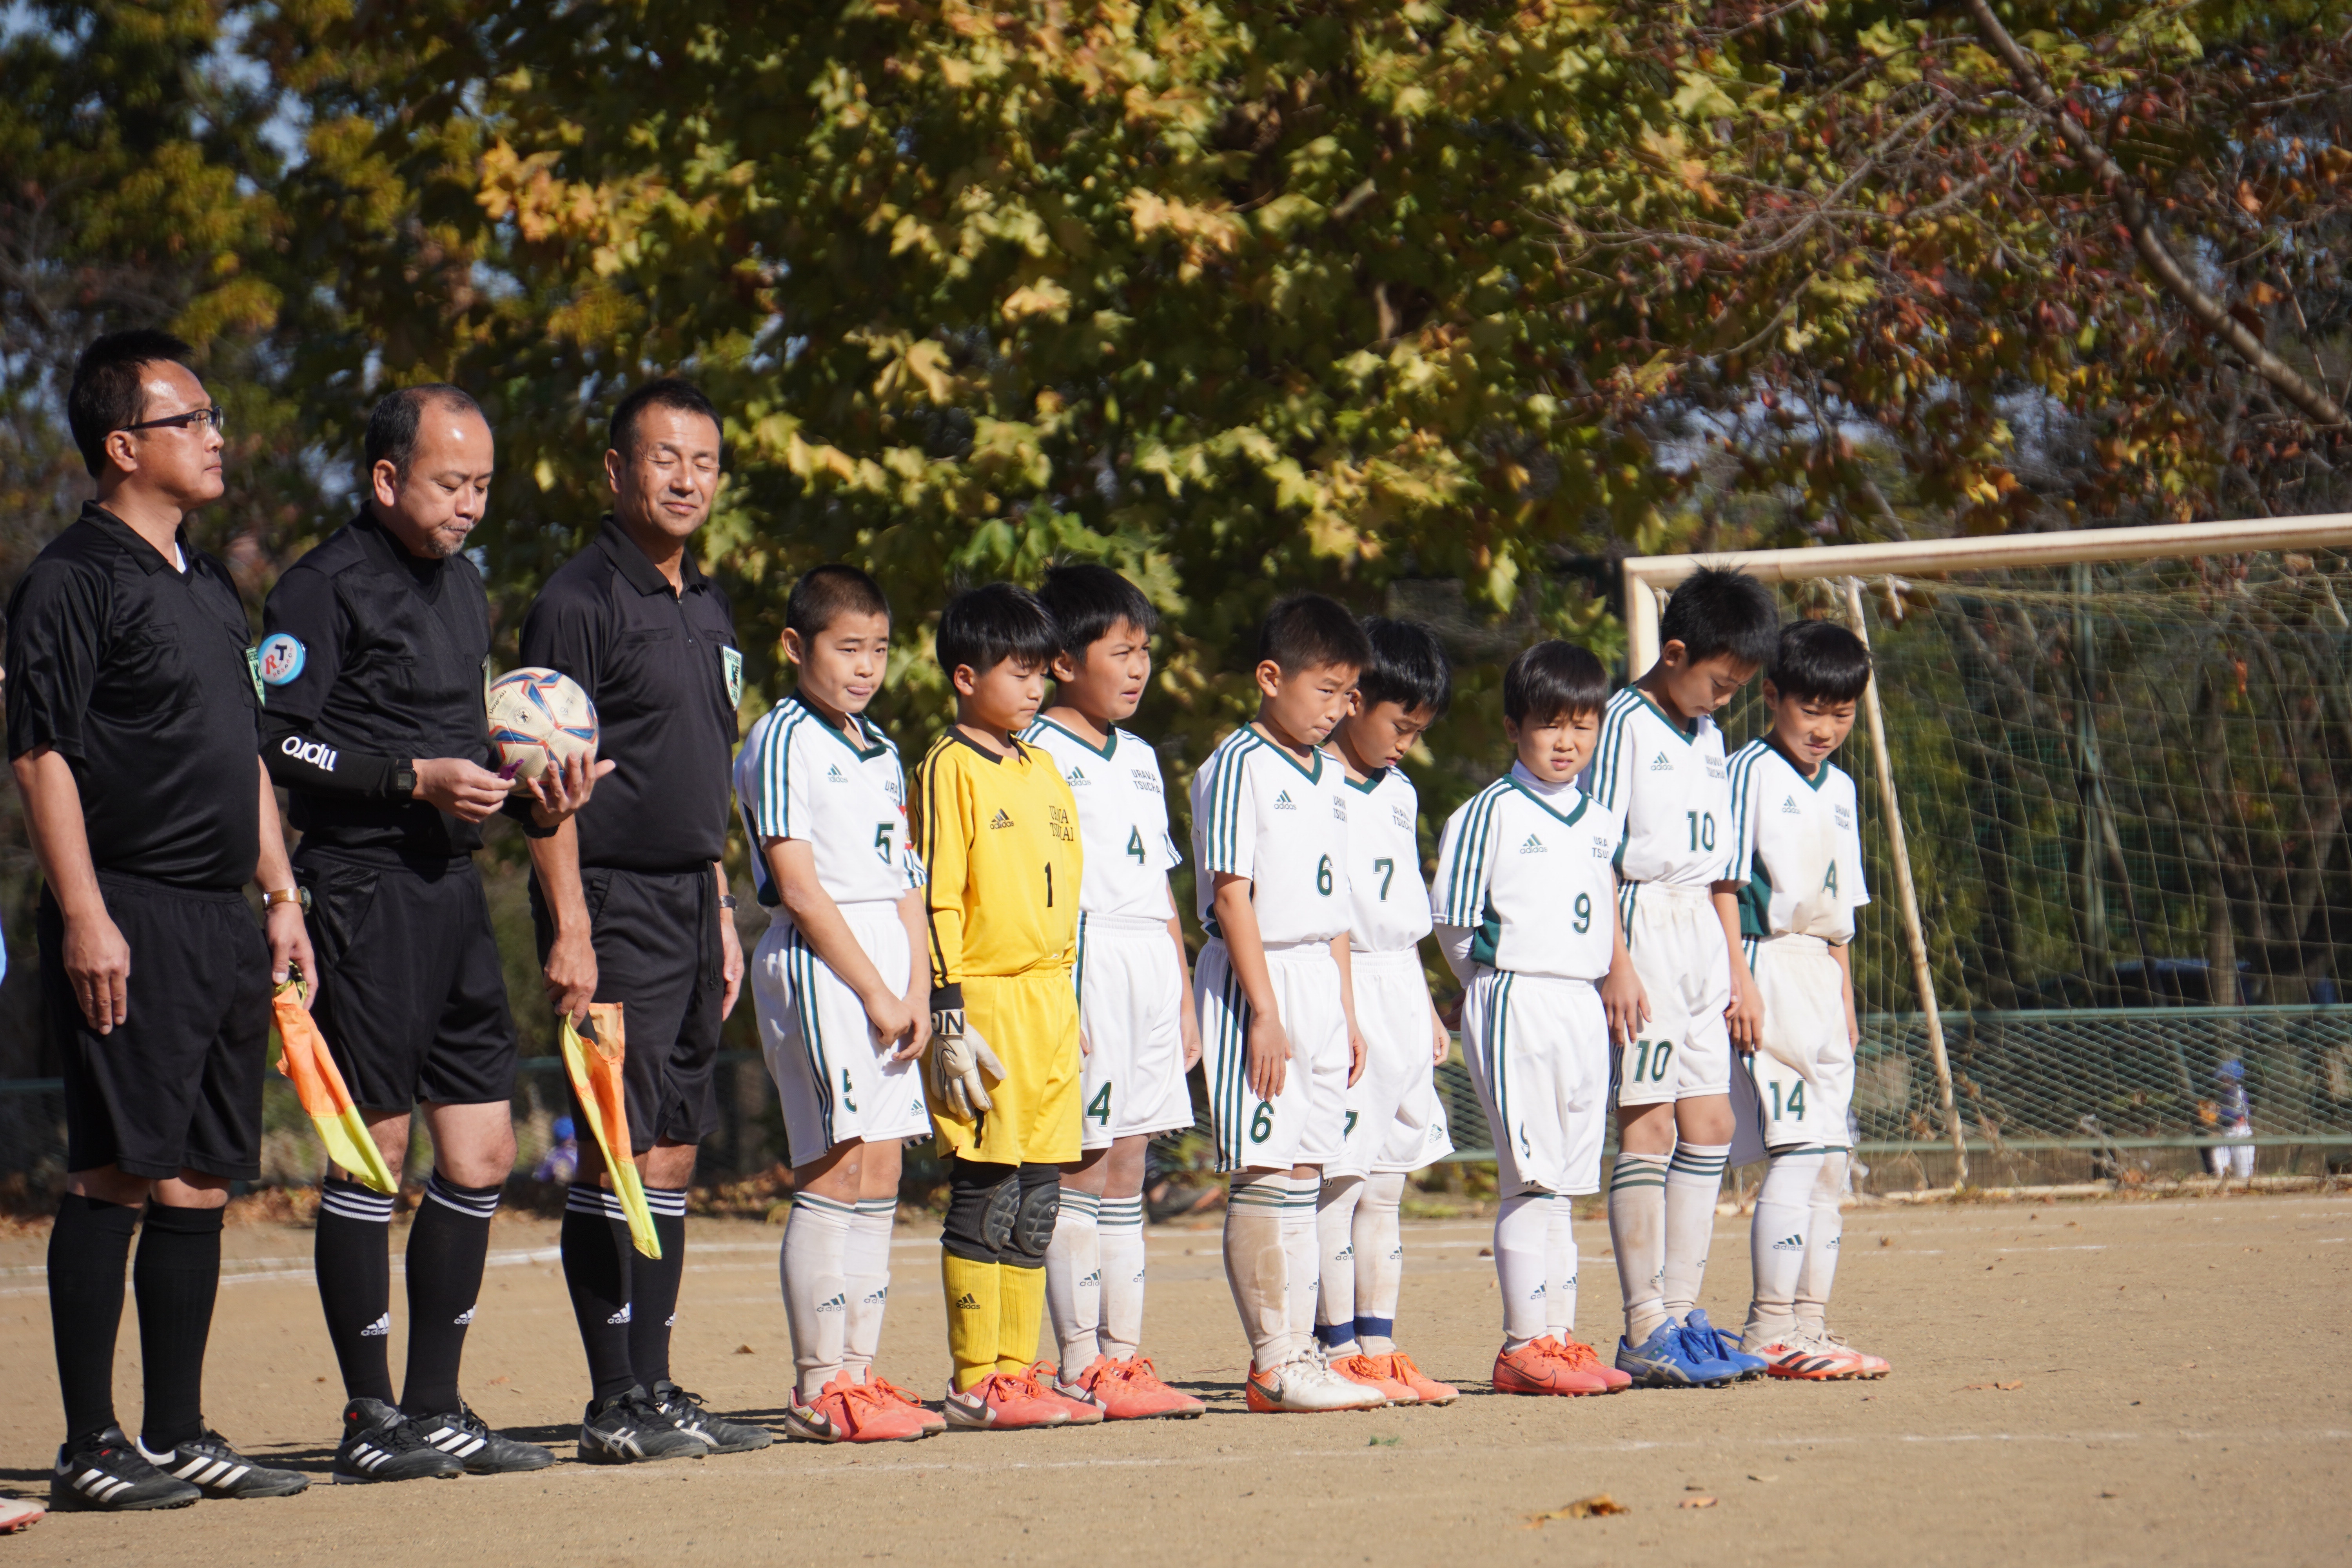 浦和土合サッカースポーツ少年団 埼玉県さいたま市のサッカー少年団の記事一覧 ページ3